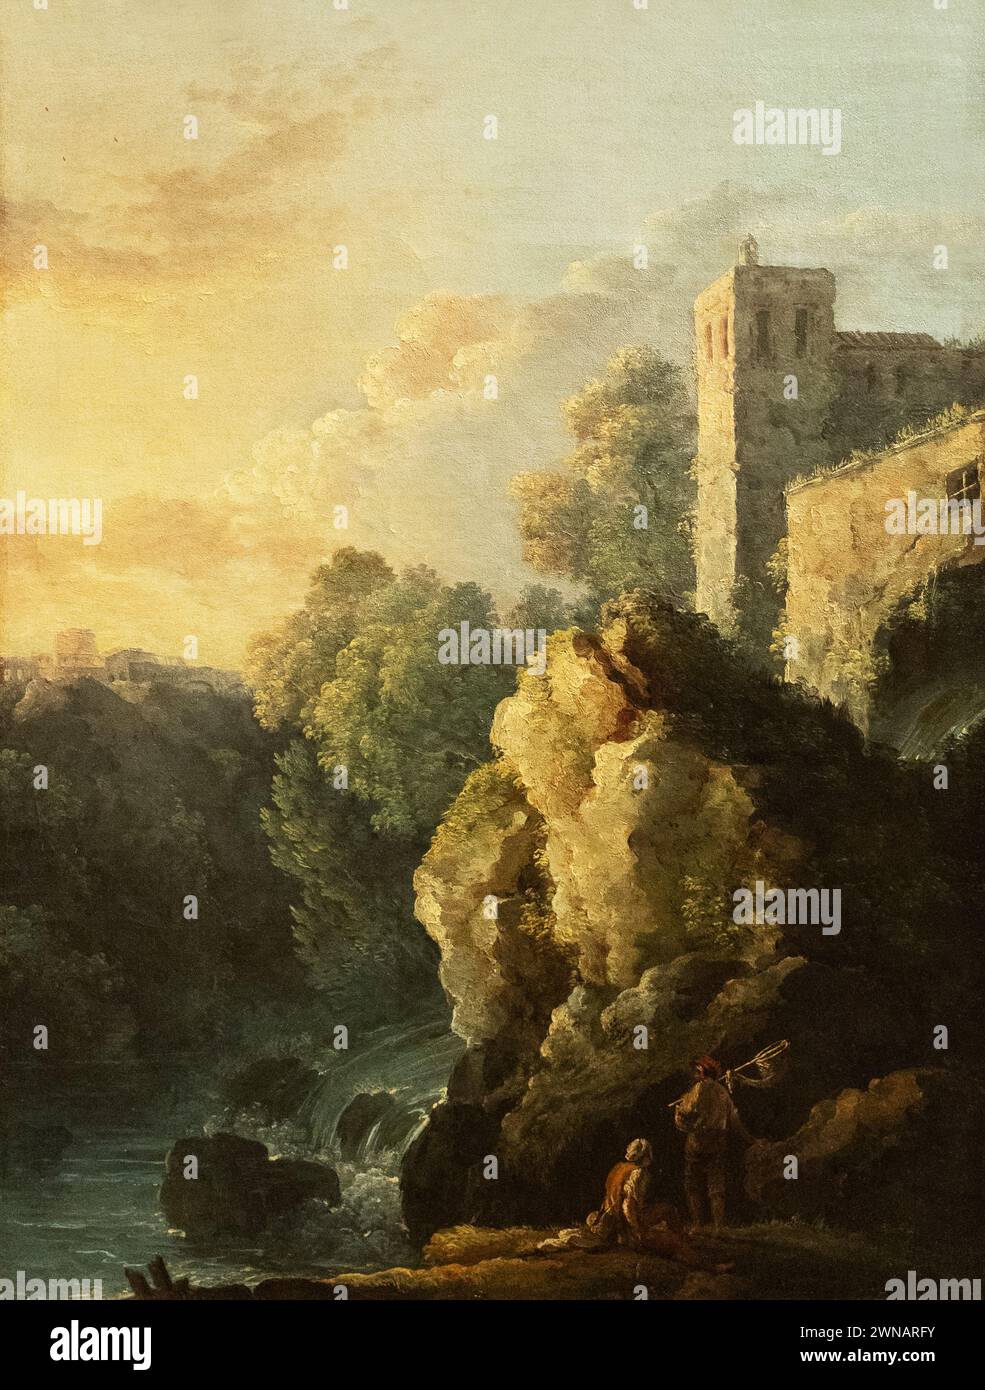 Peinture de Carlo Bonavia, 'Château et cascade', années 1700 ; paysage napolitain imaginaire. Peintre paysagiste italien du XVIIIe siècle, v. 1740-1788 Banque D'Images